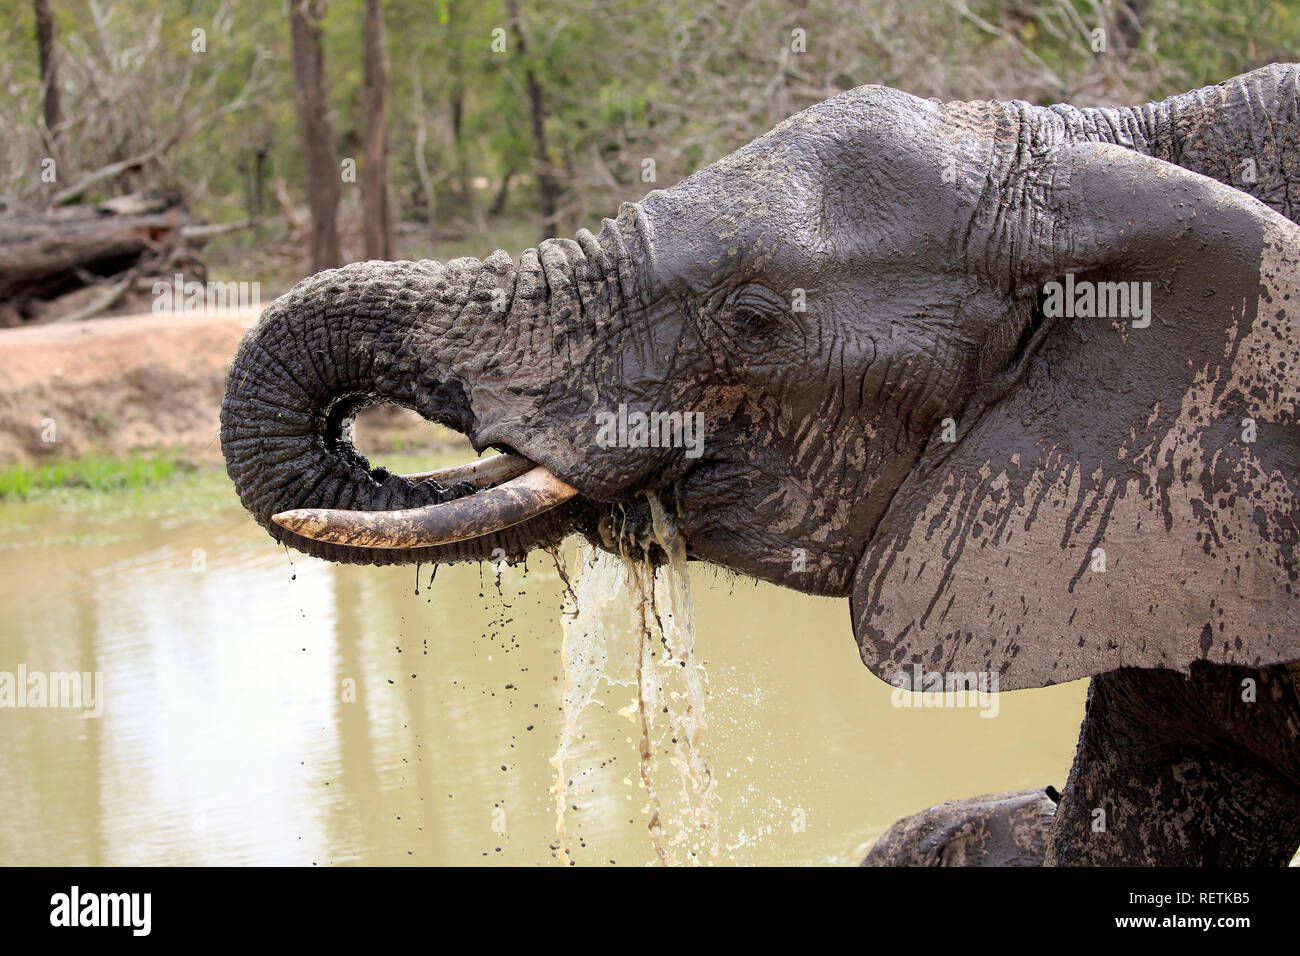 Los elefantes africanos, los adultos en el agua potable, retrato, Sabi Sand Game Reserve, el Parque Nacional Kruger, Sudáfrica, África (Loxodonta africana) Foto de stock